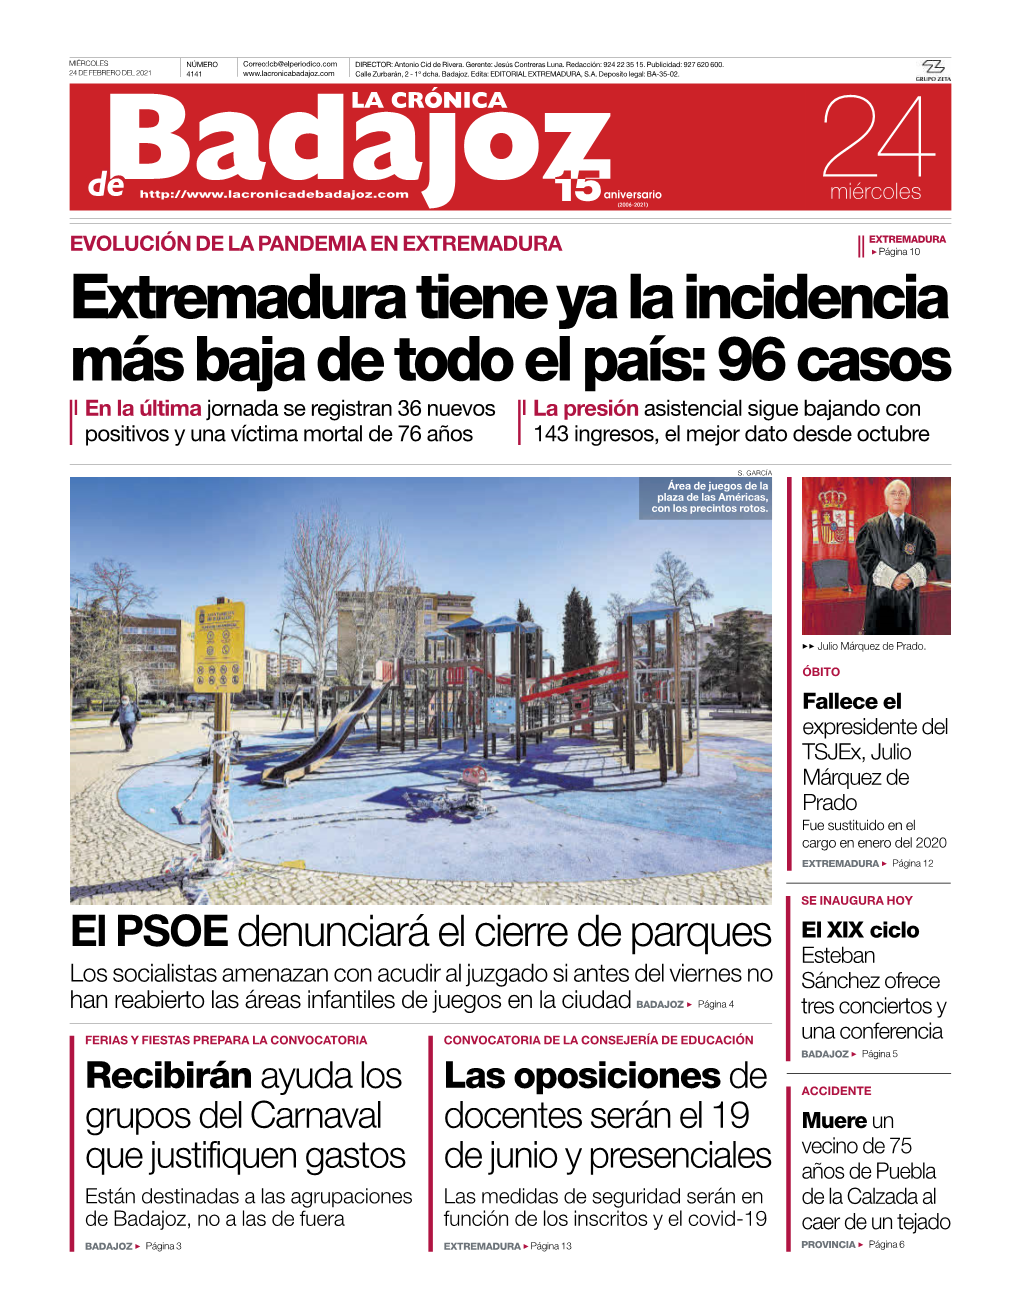 Extremadura Tiene Ya La Incidencia Más Baja De Todo El País: 96 Casos